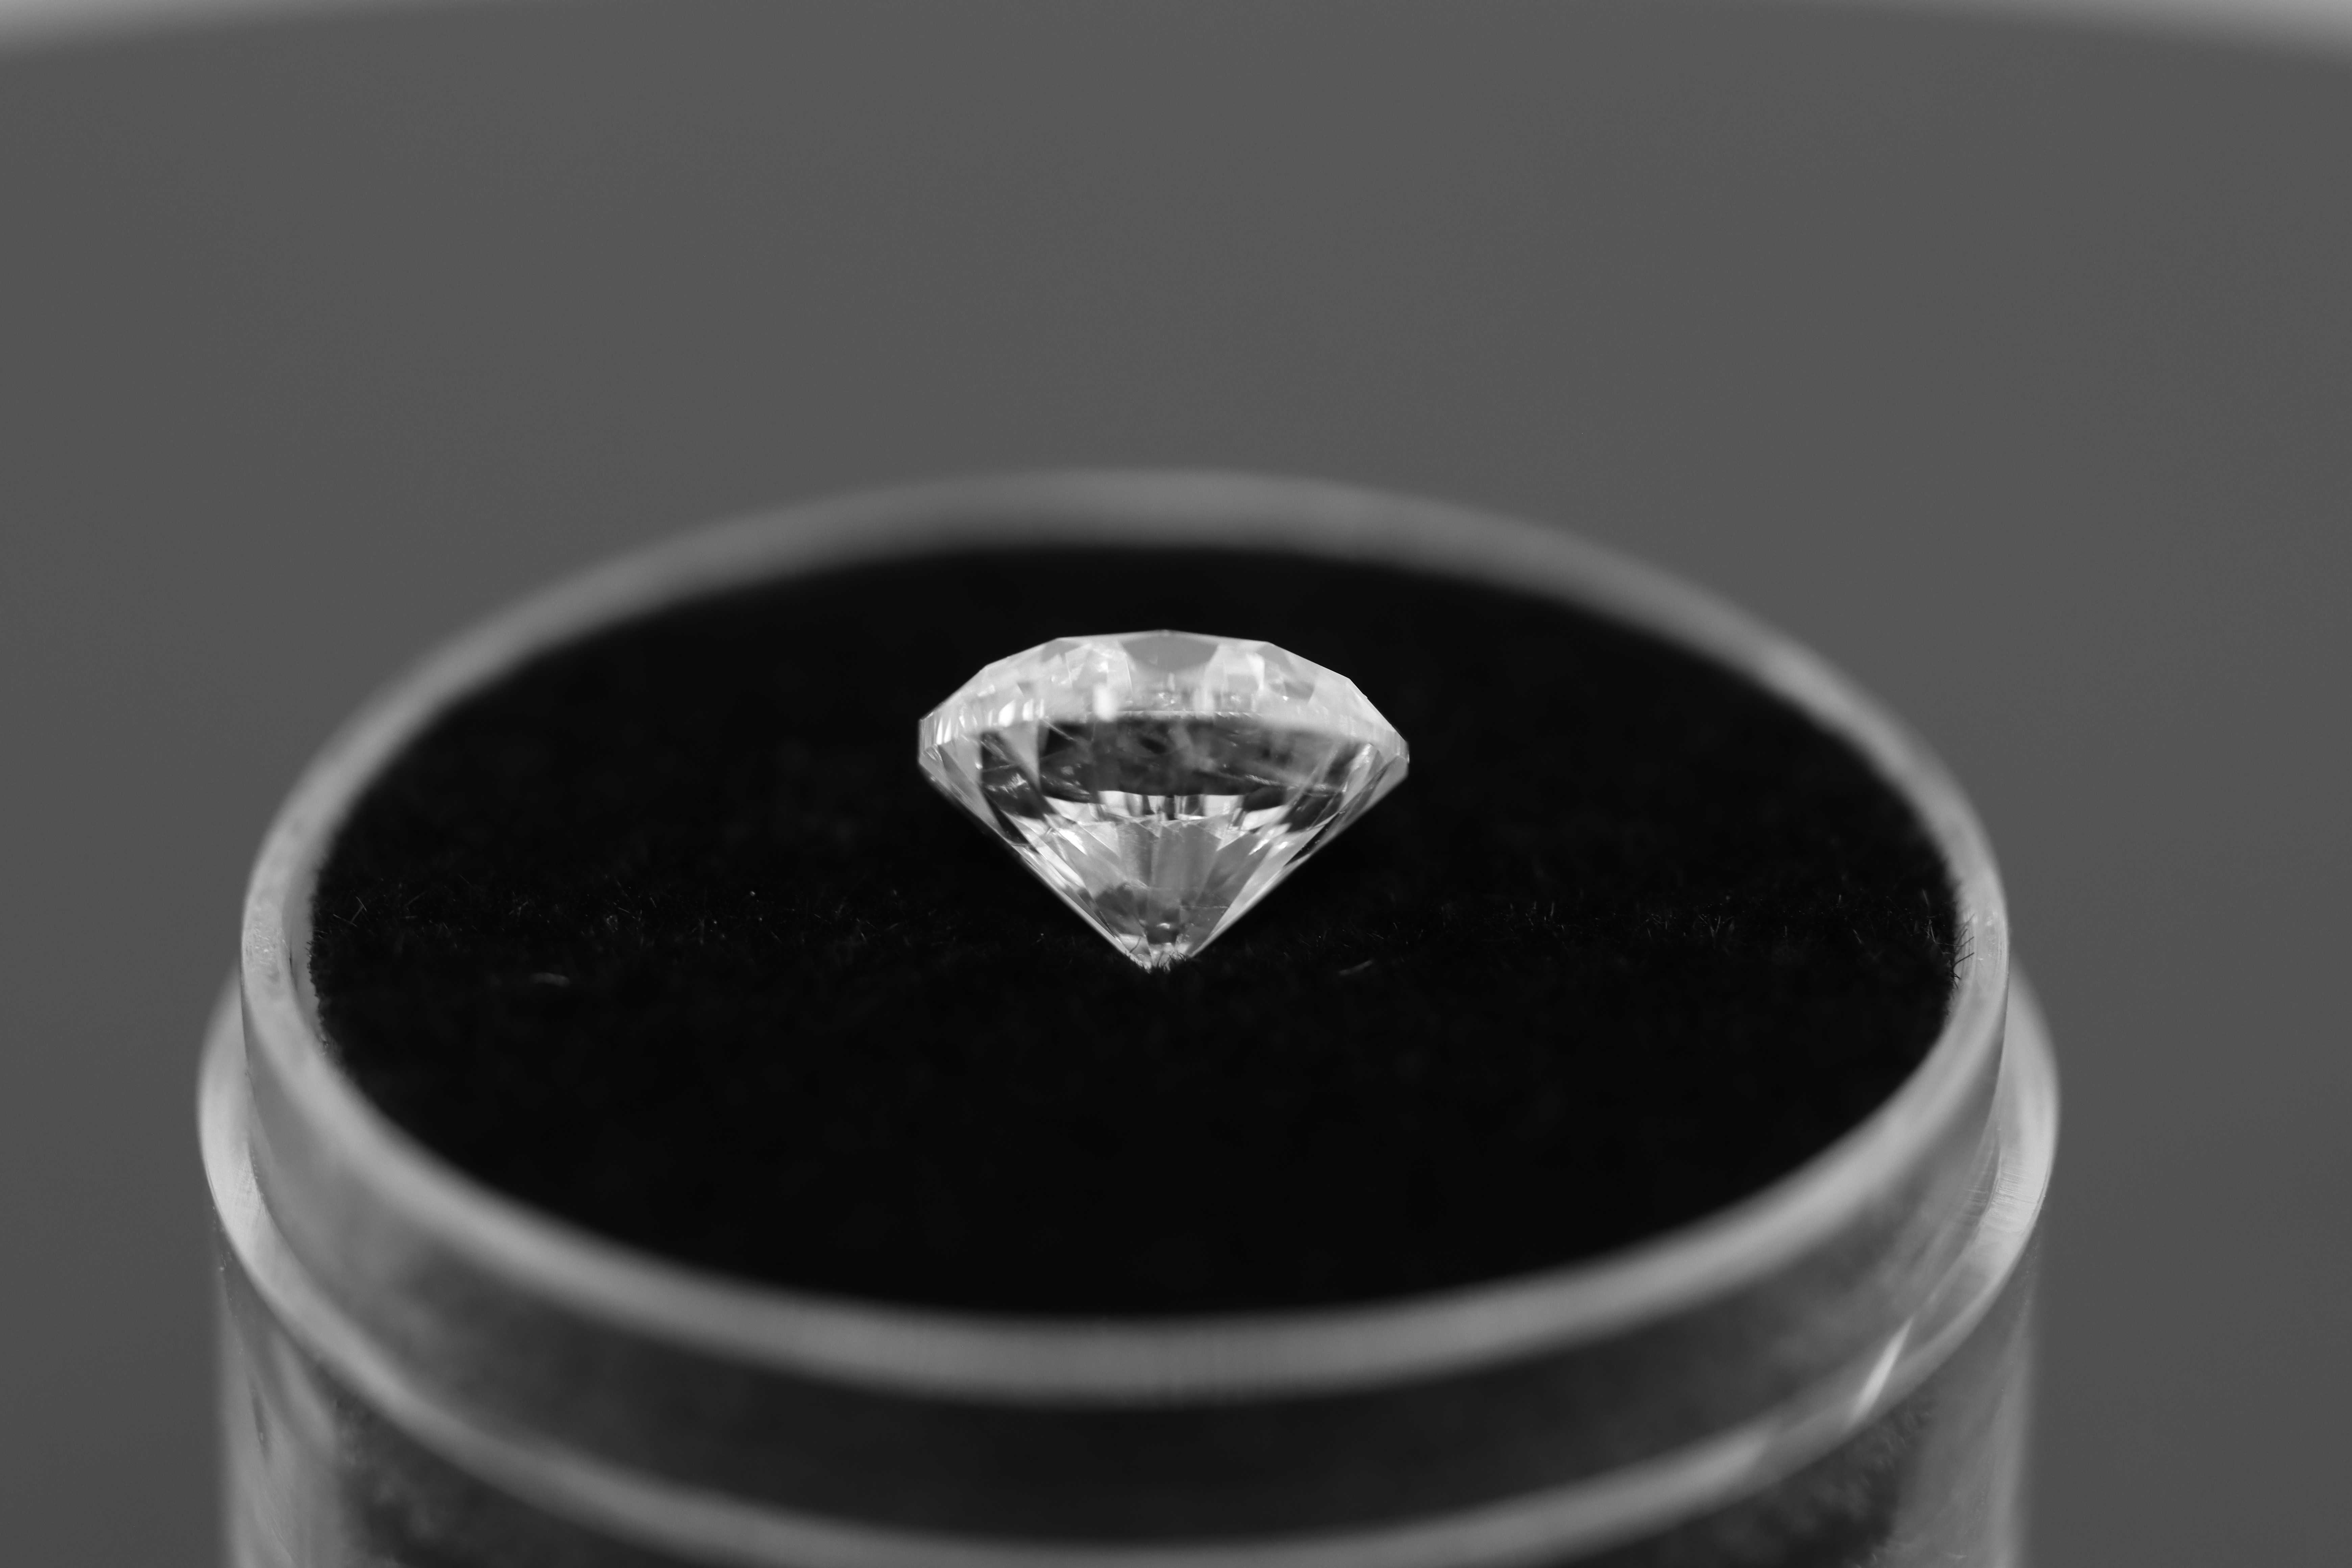 Single - Round Brilliant Cut Natural Diamond 2.07 Carat Colour E Clarity VS2 - DGI 142557706 - Image 10 of 14